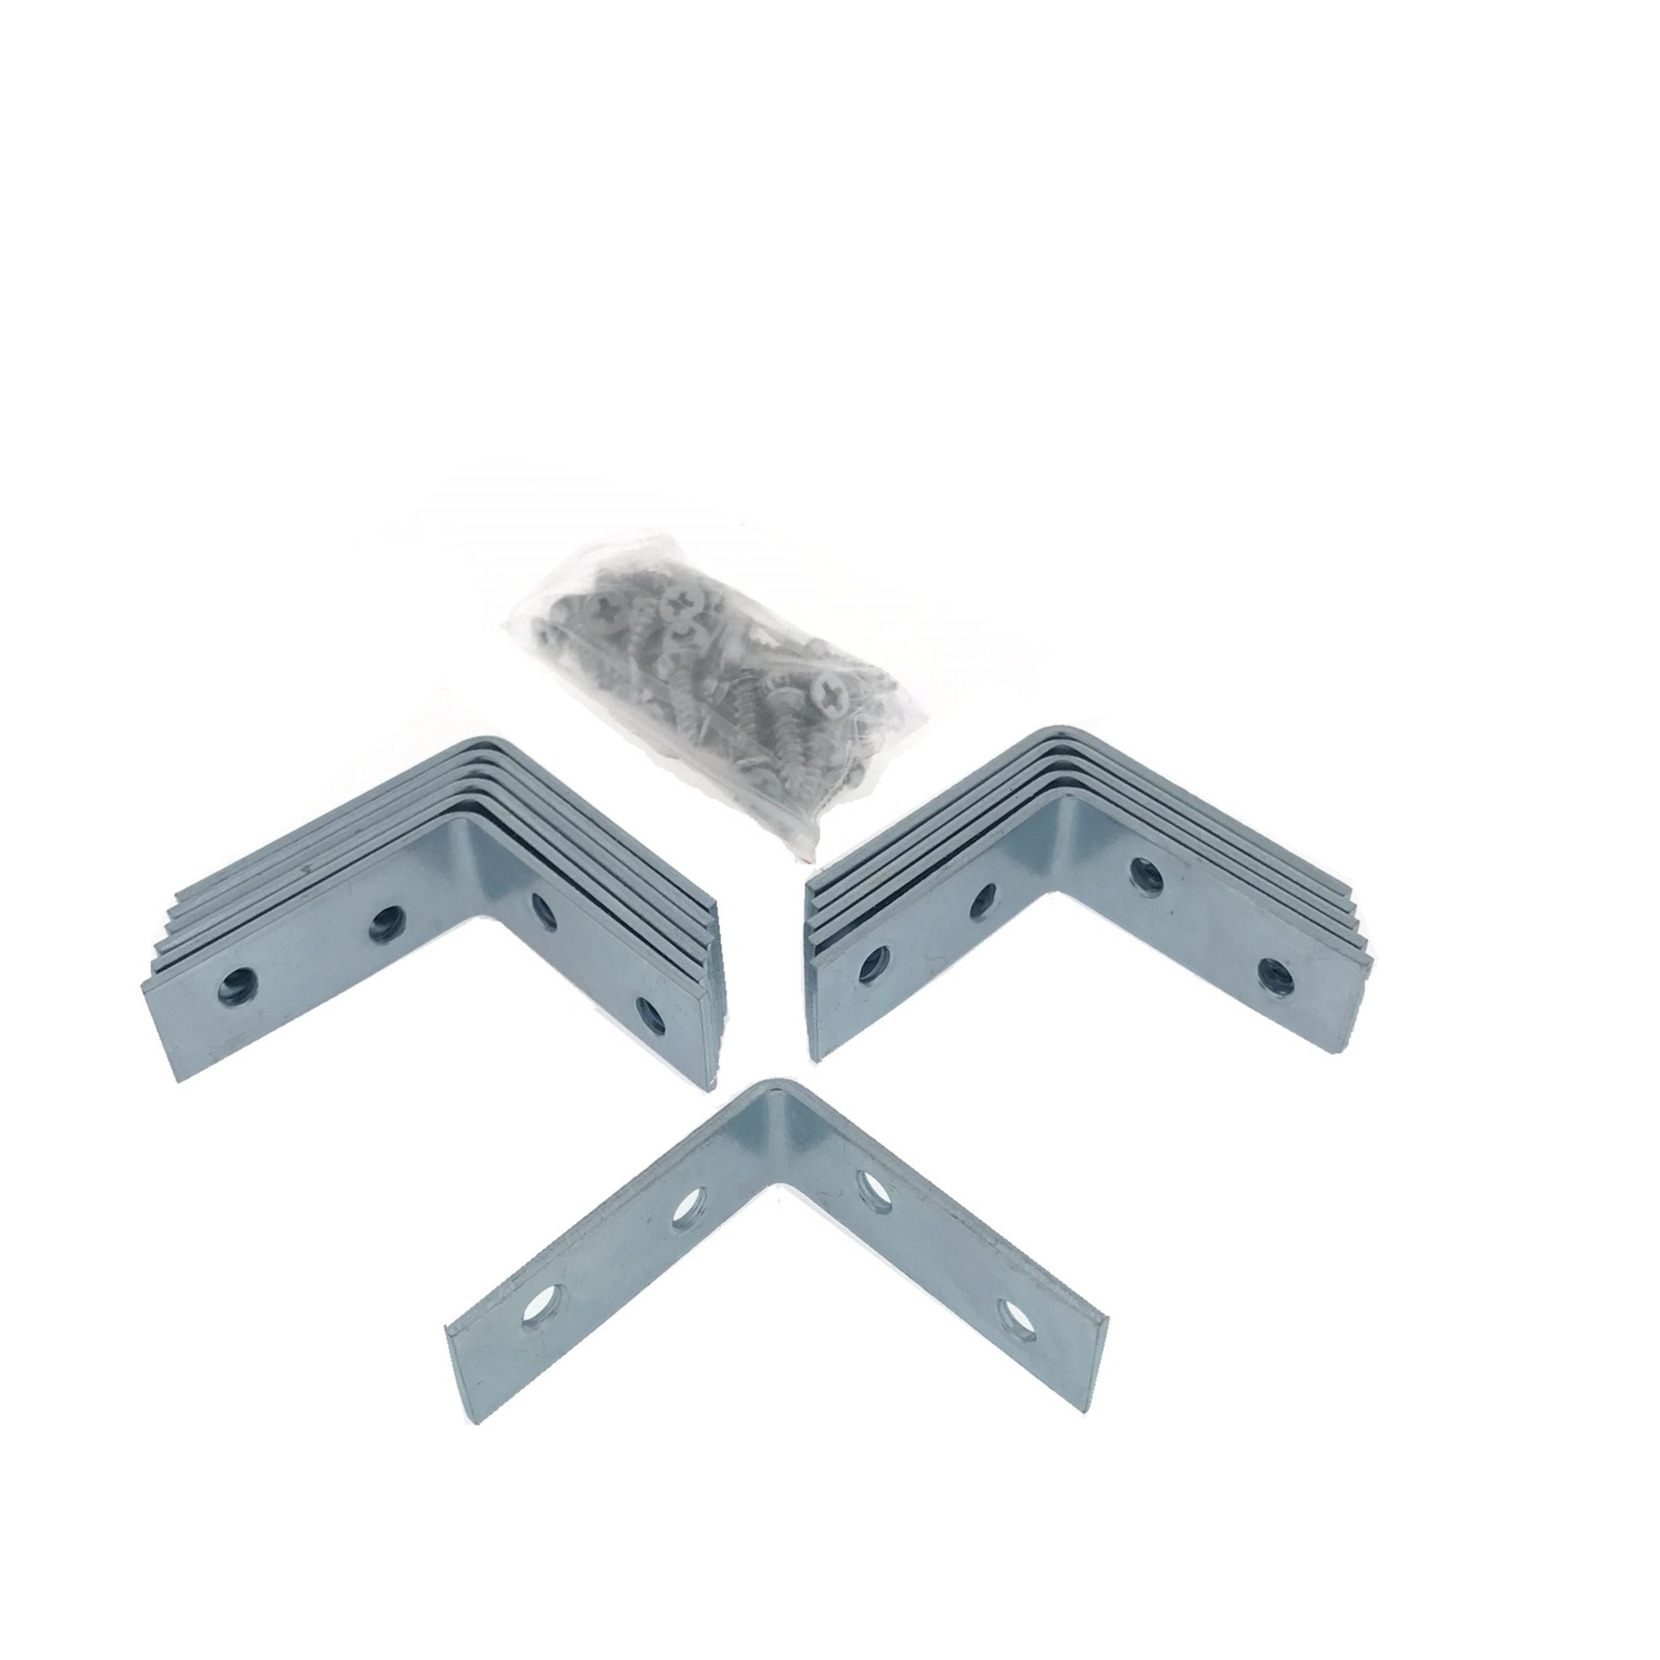 12x stuks hoekankers / stoelhoeken / hoekverbinders inclusief schroeven 40 x 40 x 15 mm -